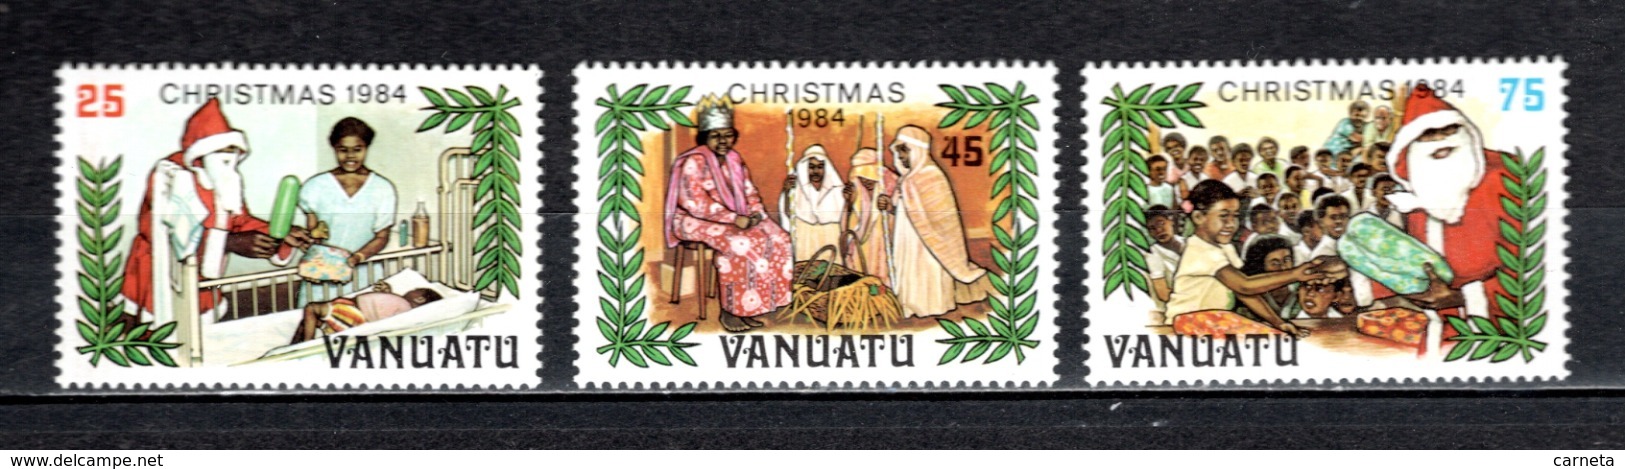 VANUATU  N° 702 à 704  NEUFS SANS CHARNIERE  COTE  5.60€  NOEL - Vanuatu (1980-...)